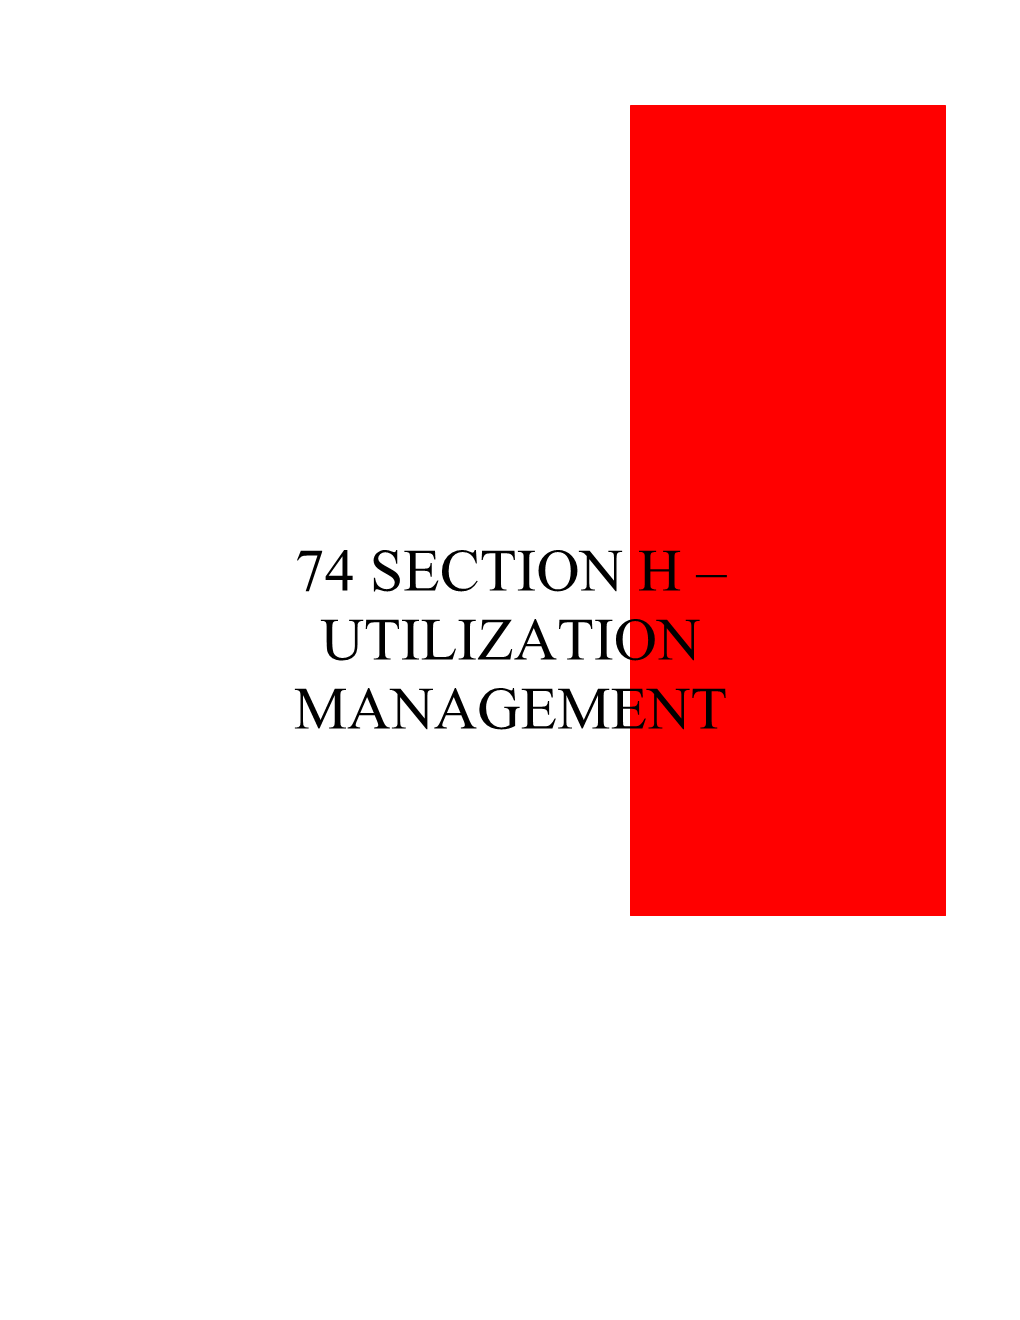 74 Section H – Utilization Management